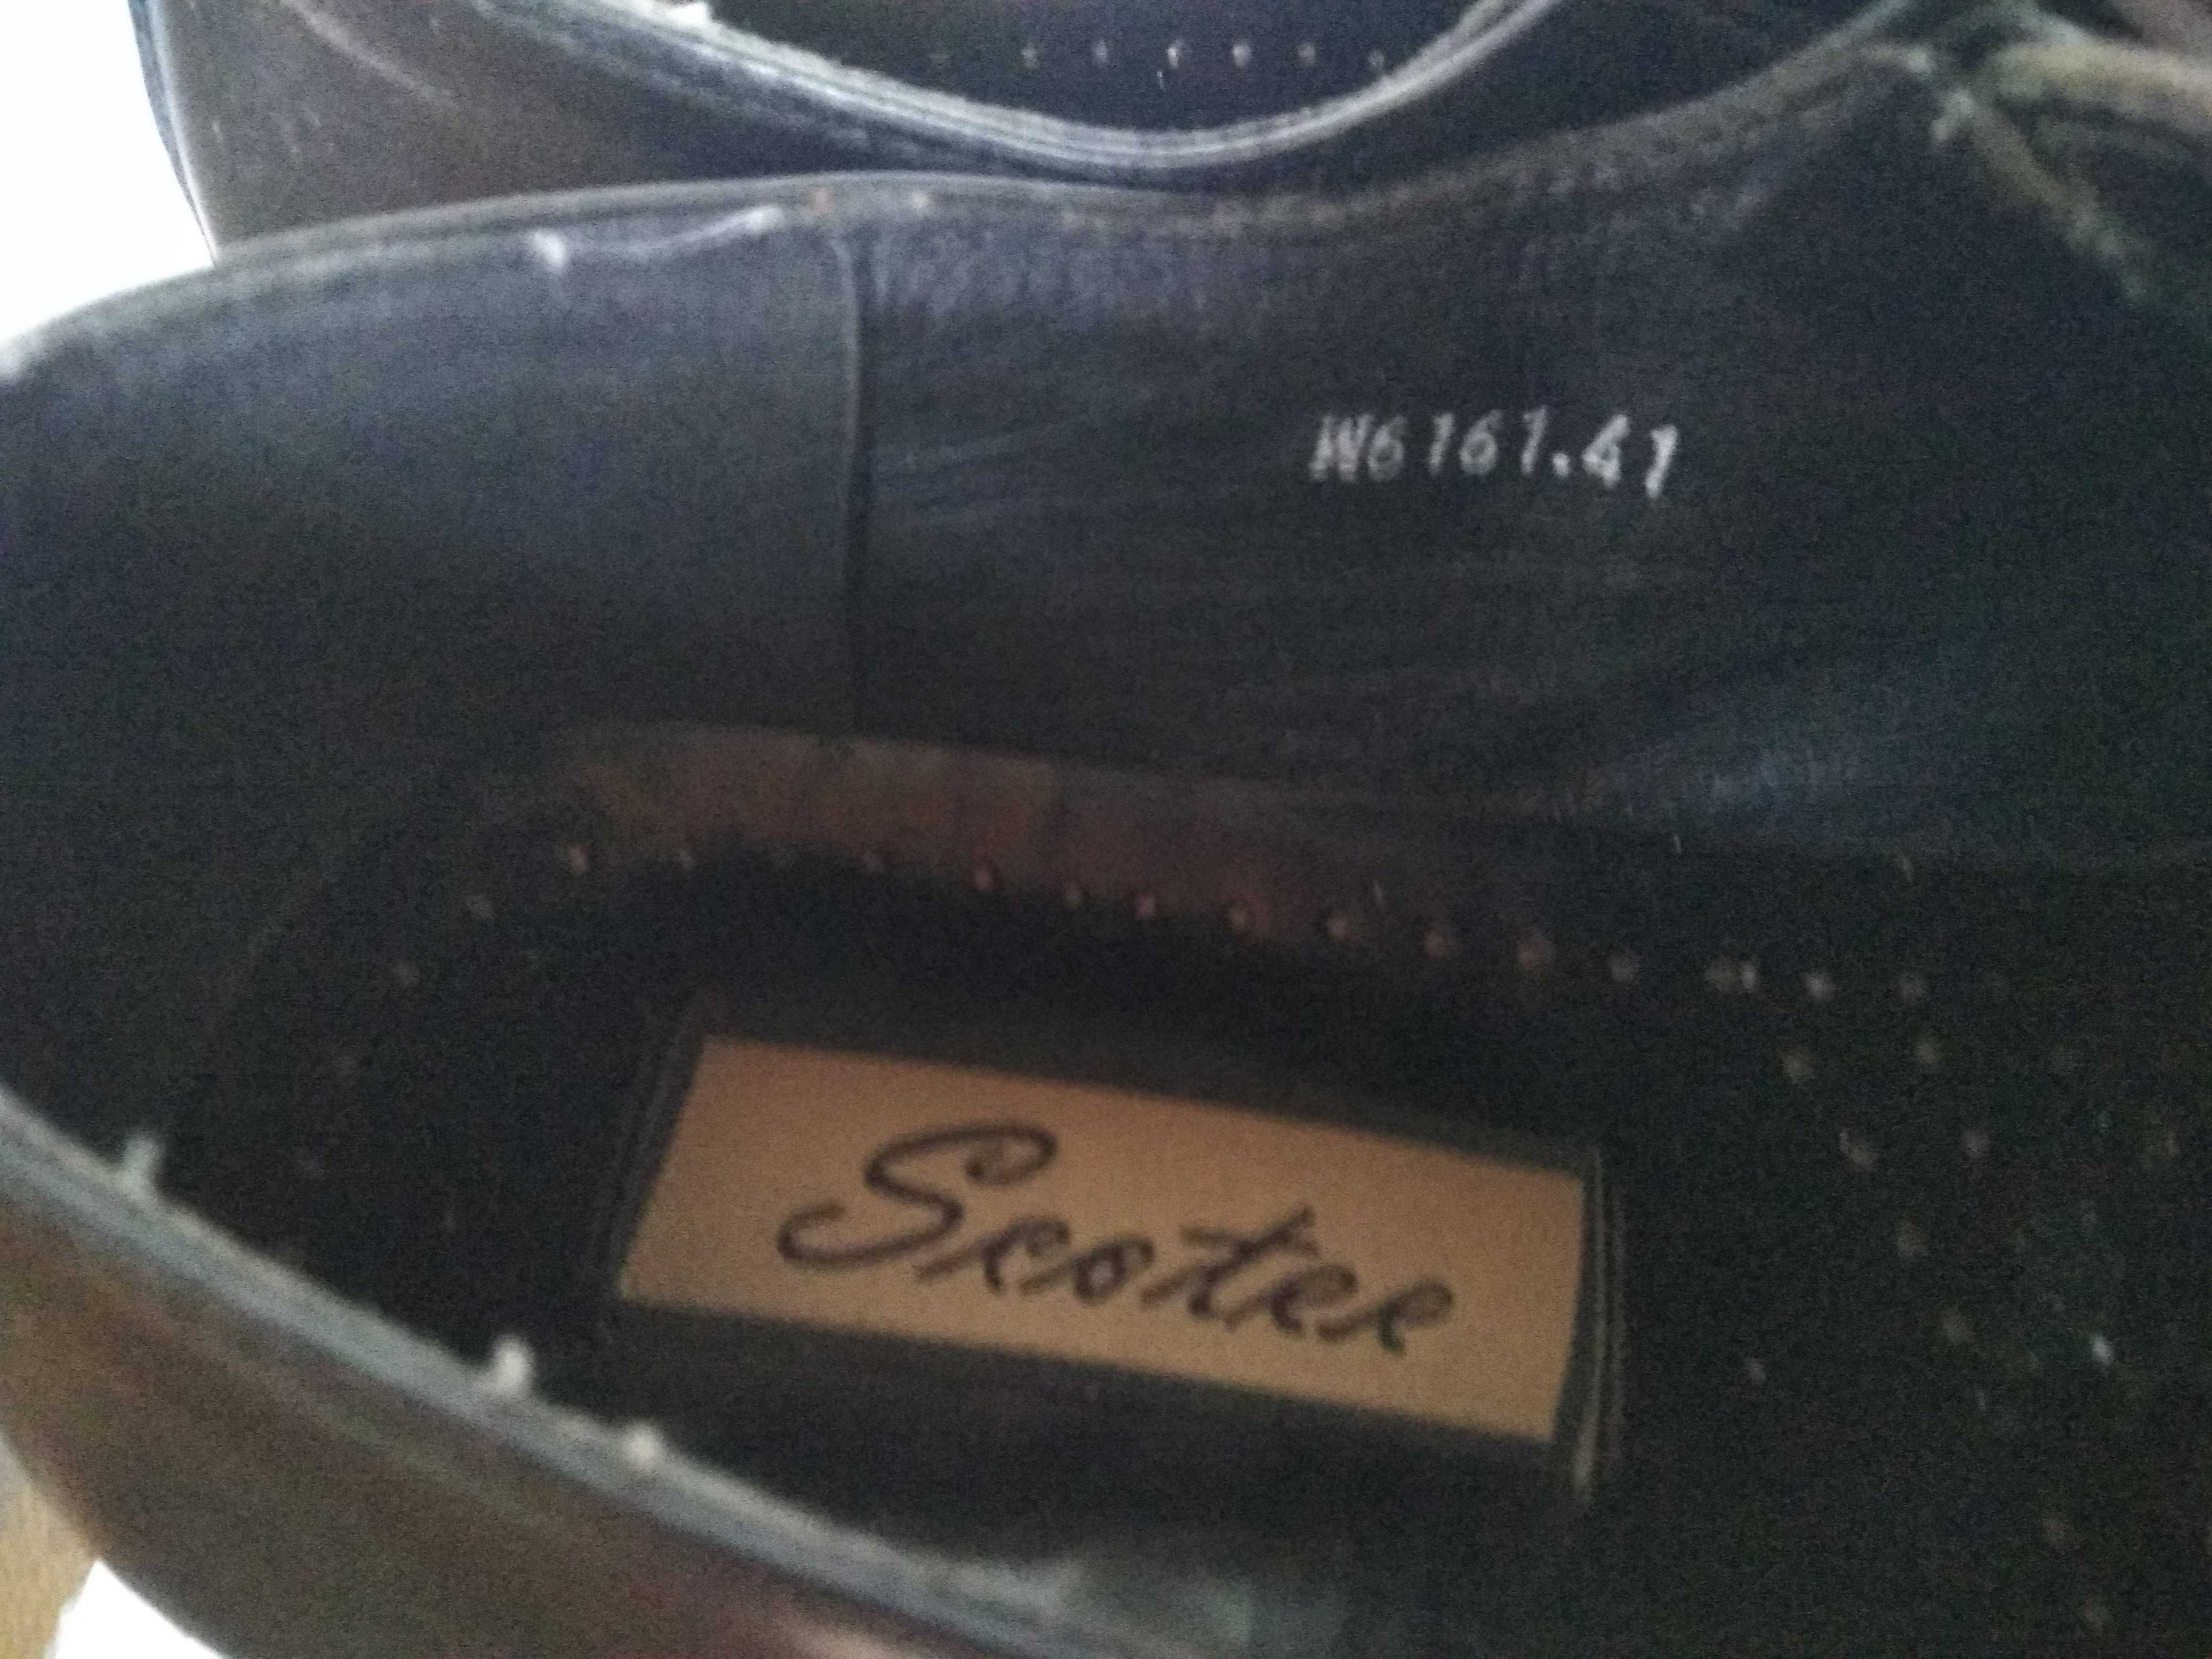 Чоловічі весільні туфлі 43 розмір устілка 28,2 см чорні Scoter